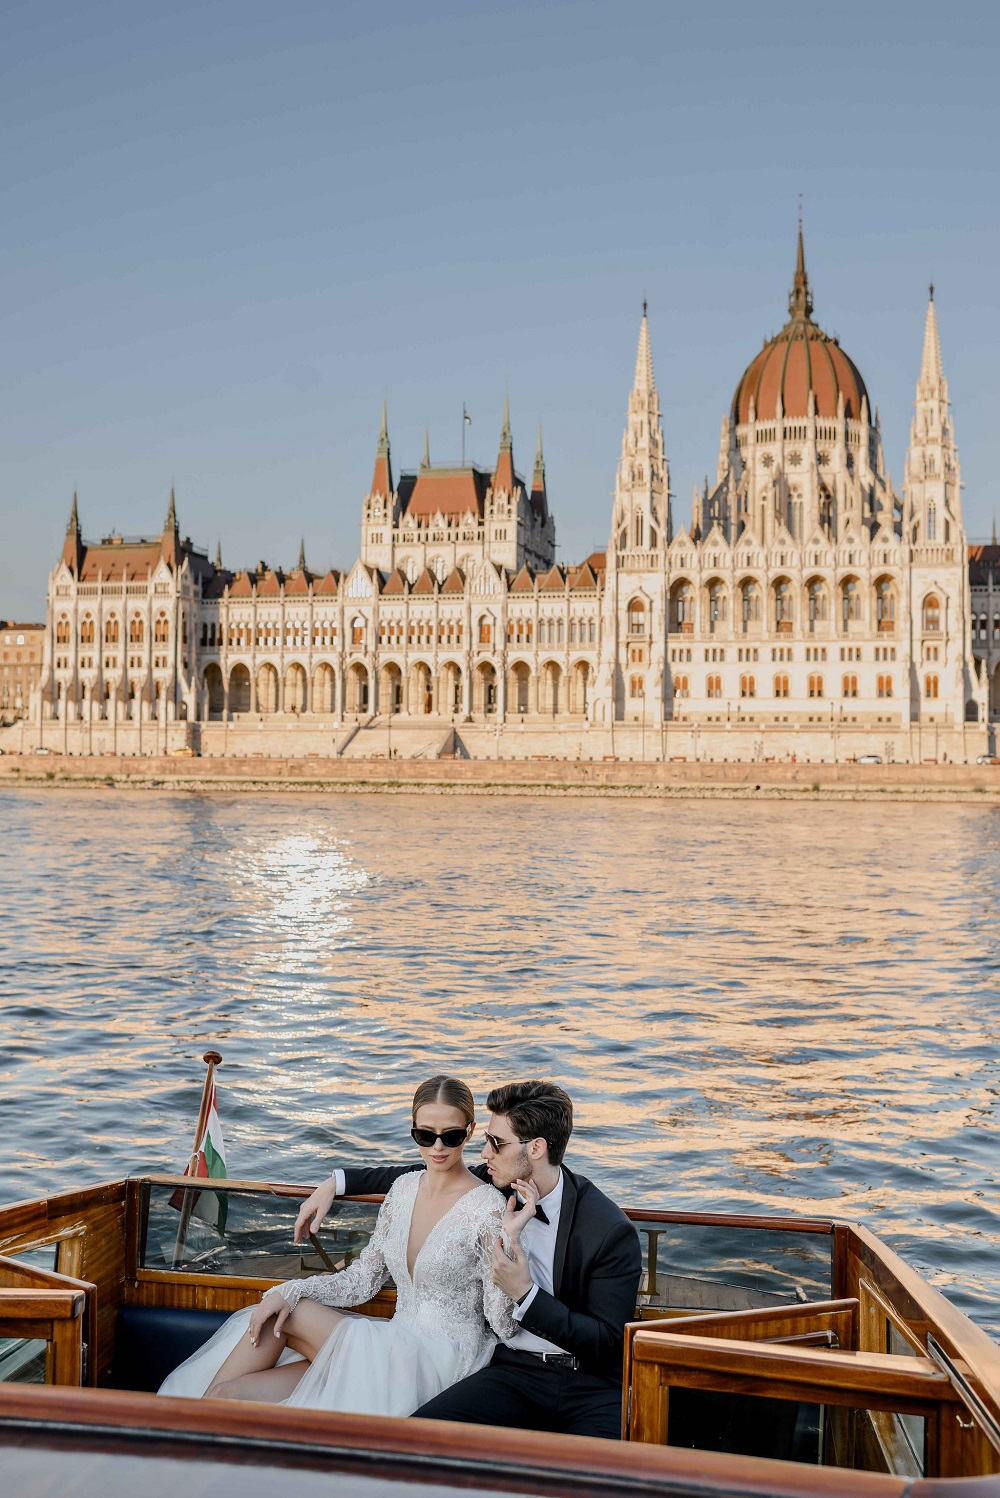 Budapest wedding styled shoot, Photo: Alex Feyer